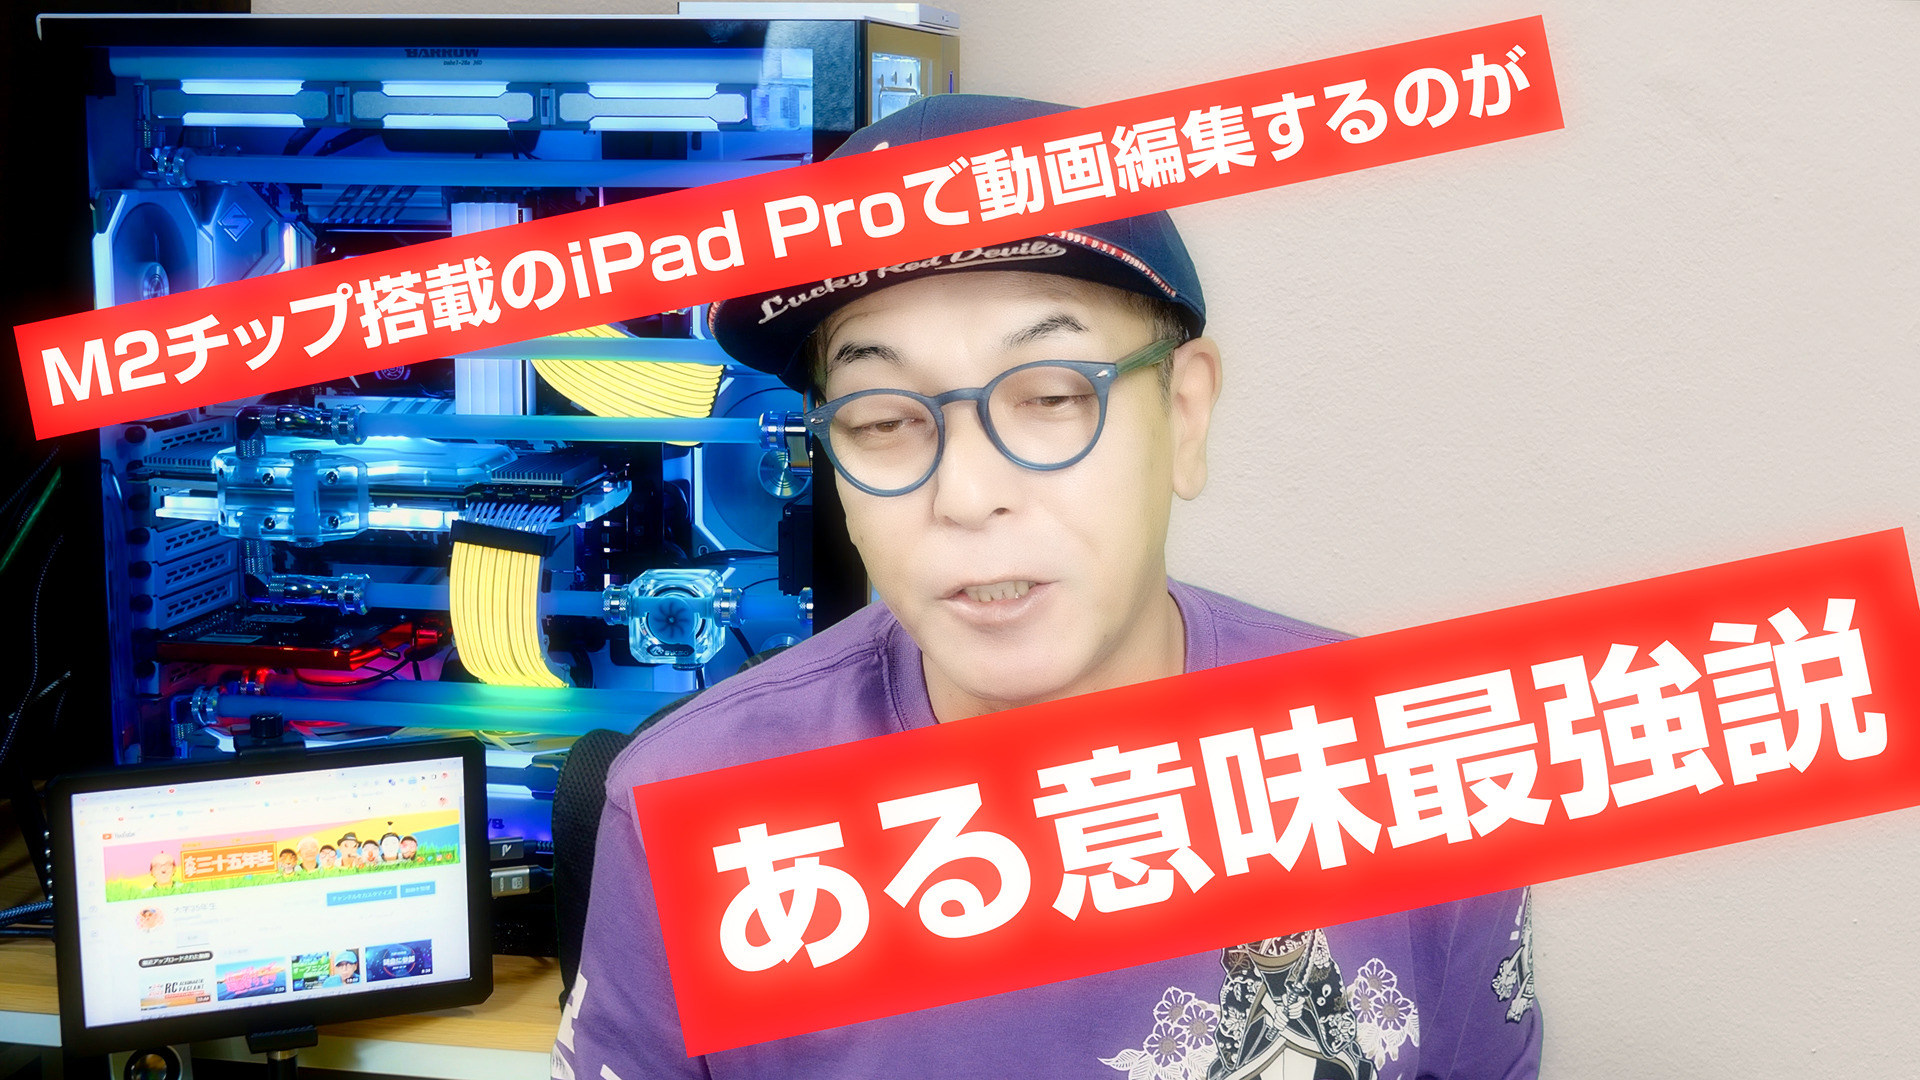 M2チップ搭載のiPad Proで動画編集するのが、ある意味最強説